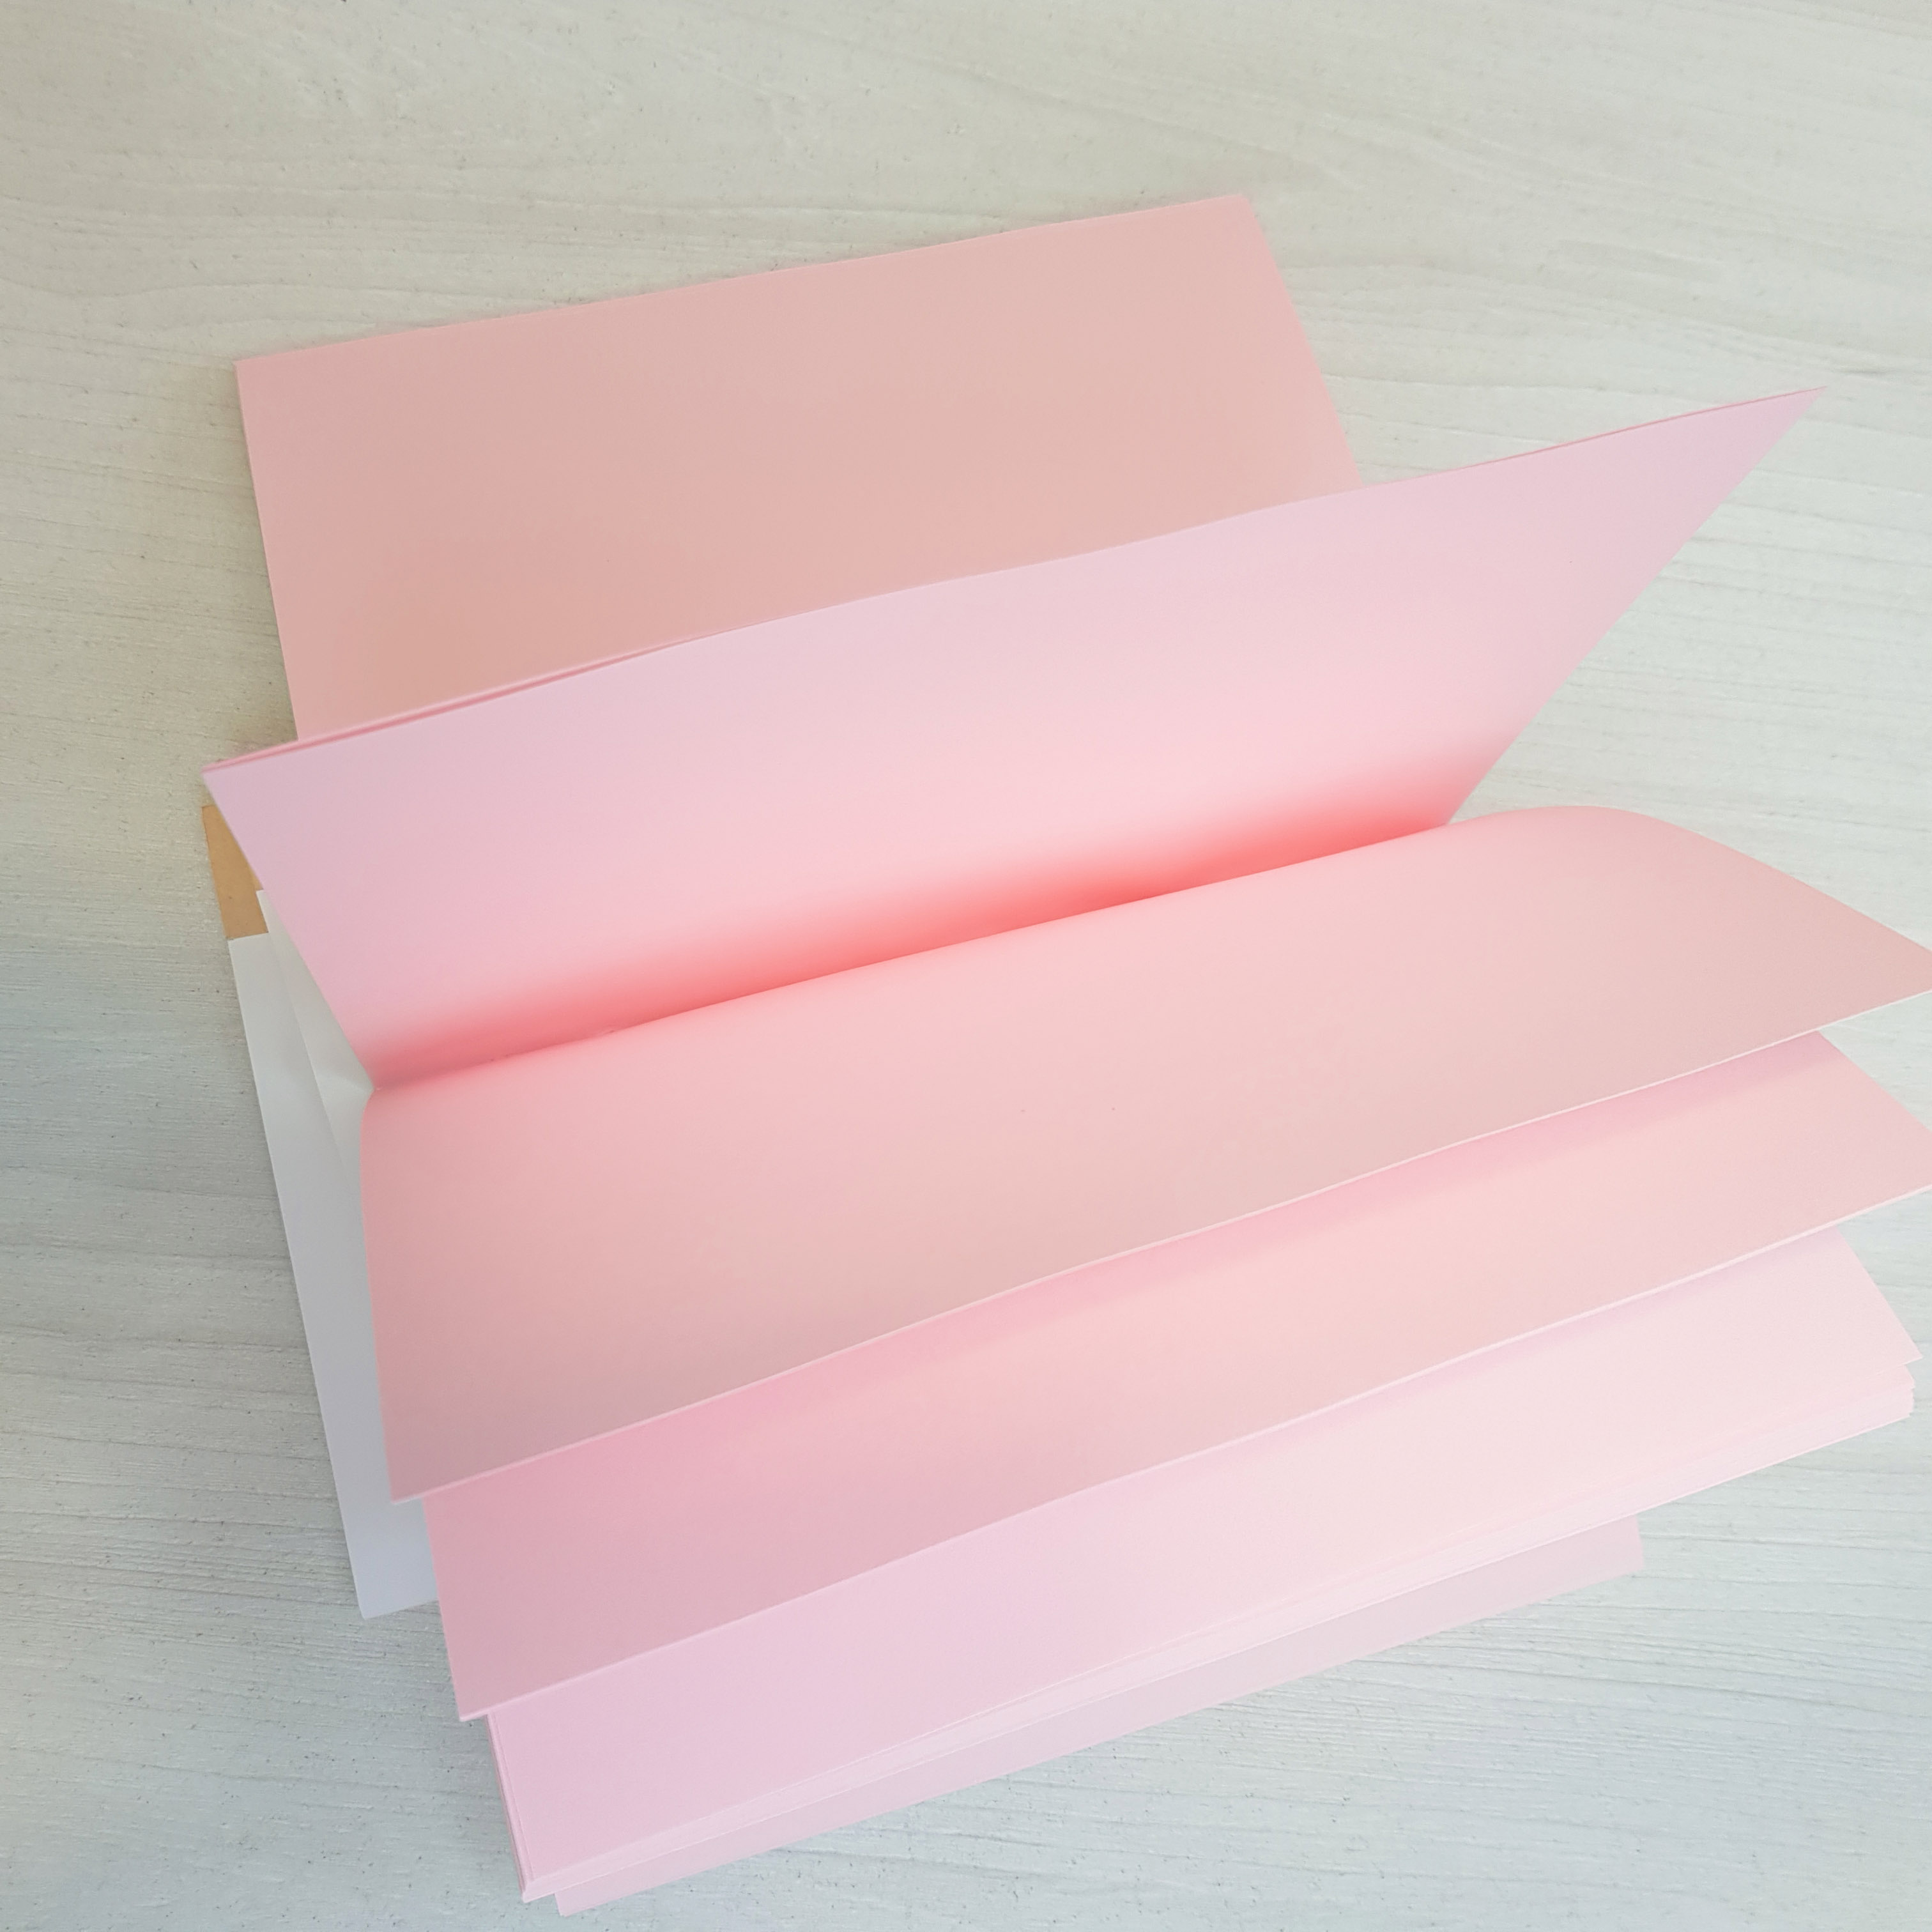 Заготовка для блокнота, цвет розовый, 80г/м2, А6, 96 листов, 192 страницы, Magenta Line